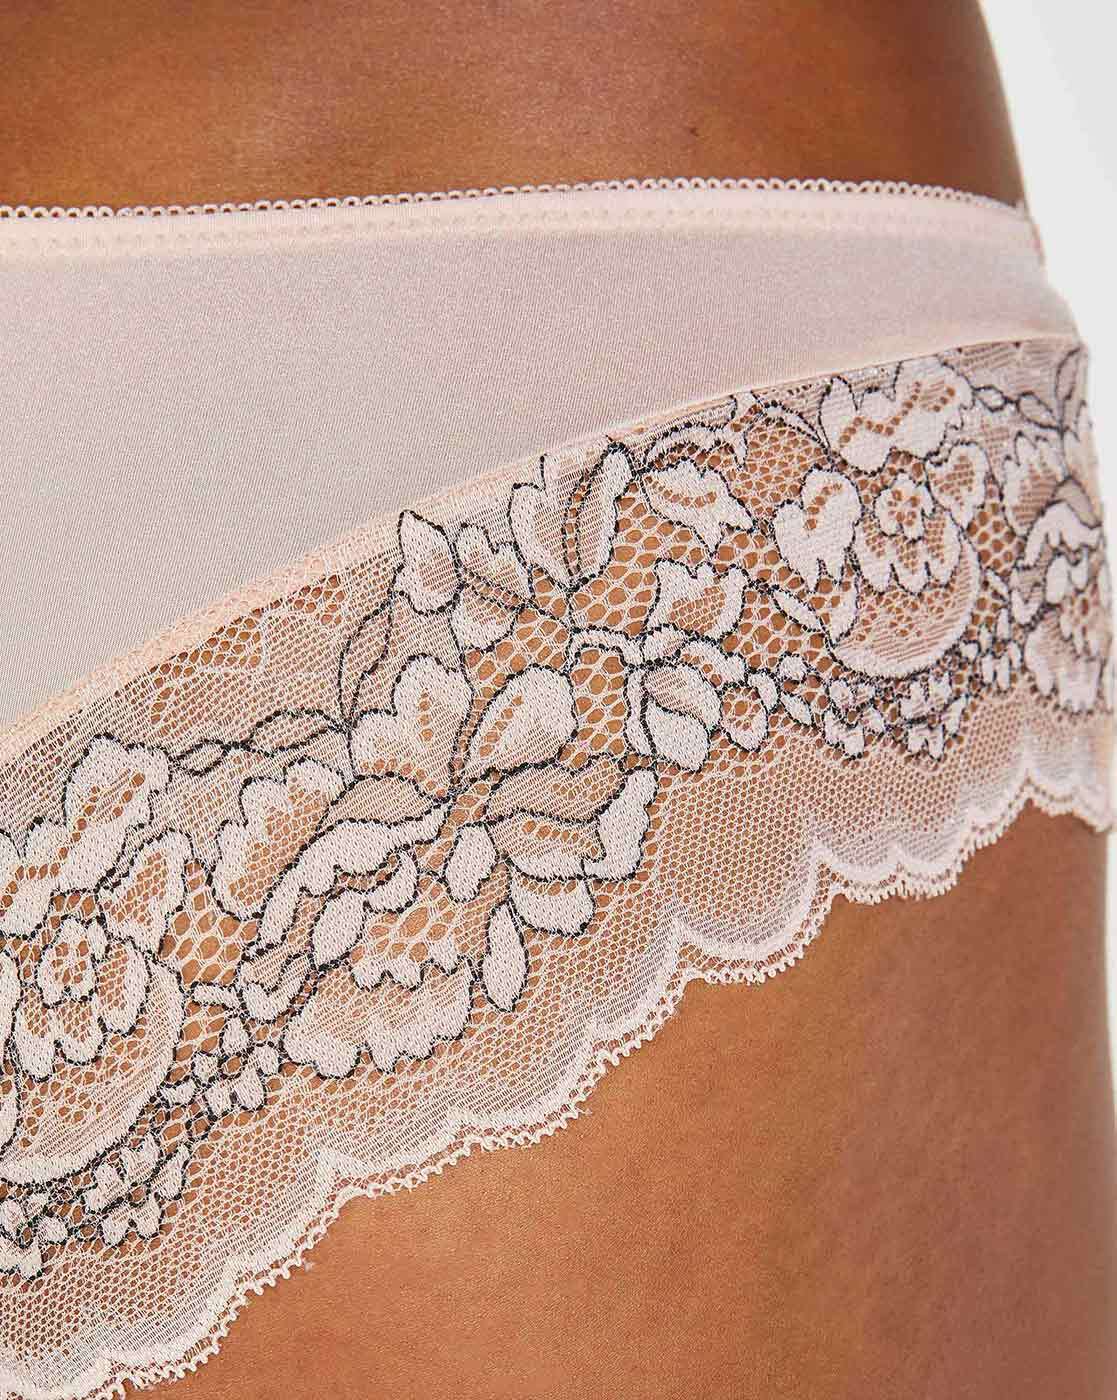 Buy Cream Panties for Women by Hunkemoller Online